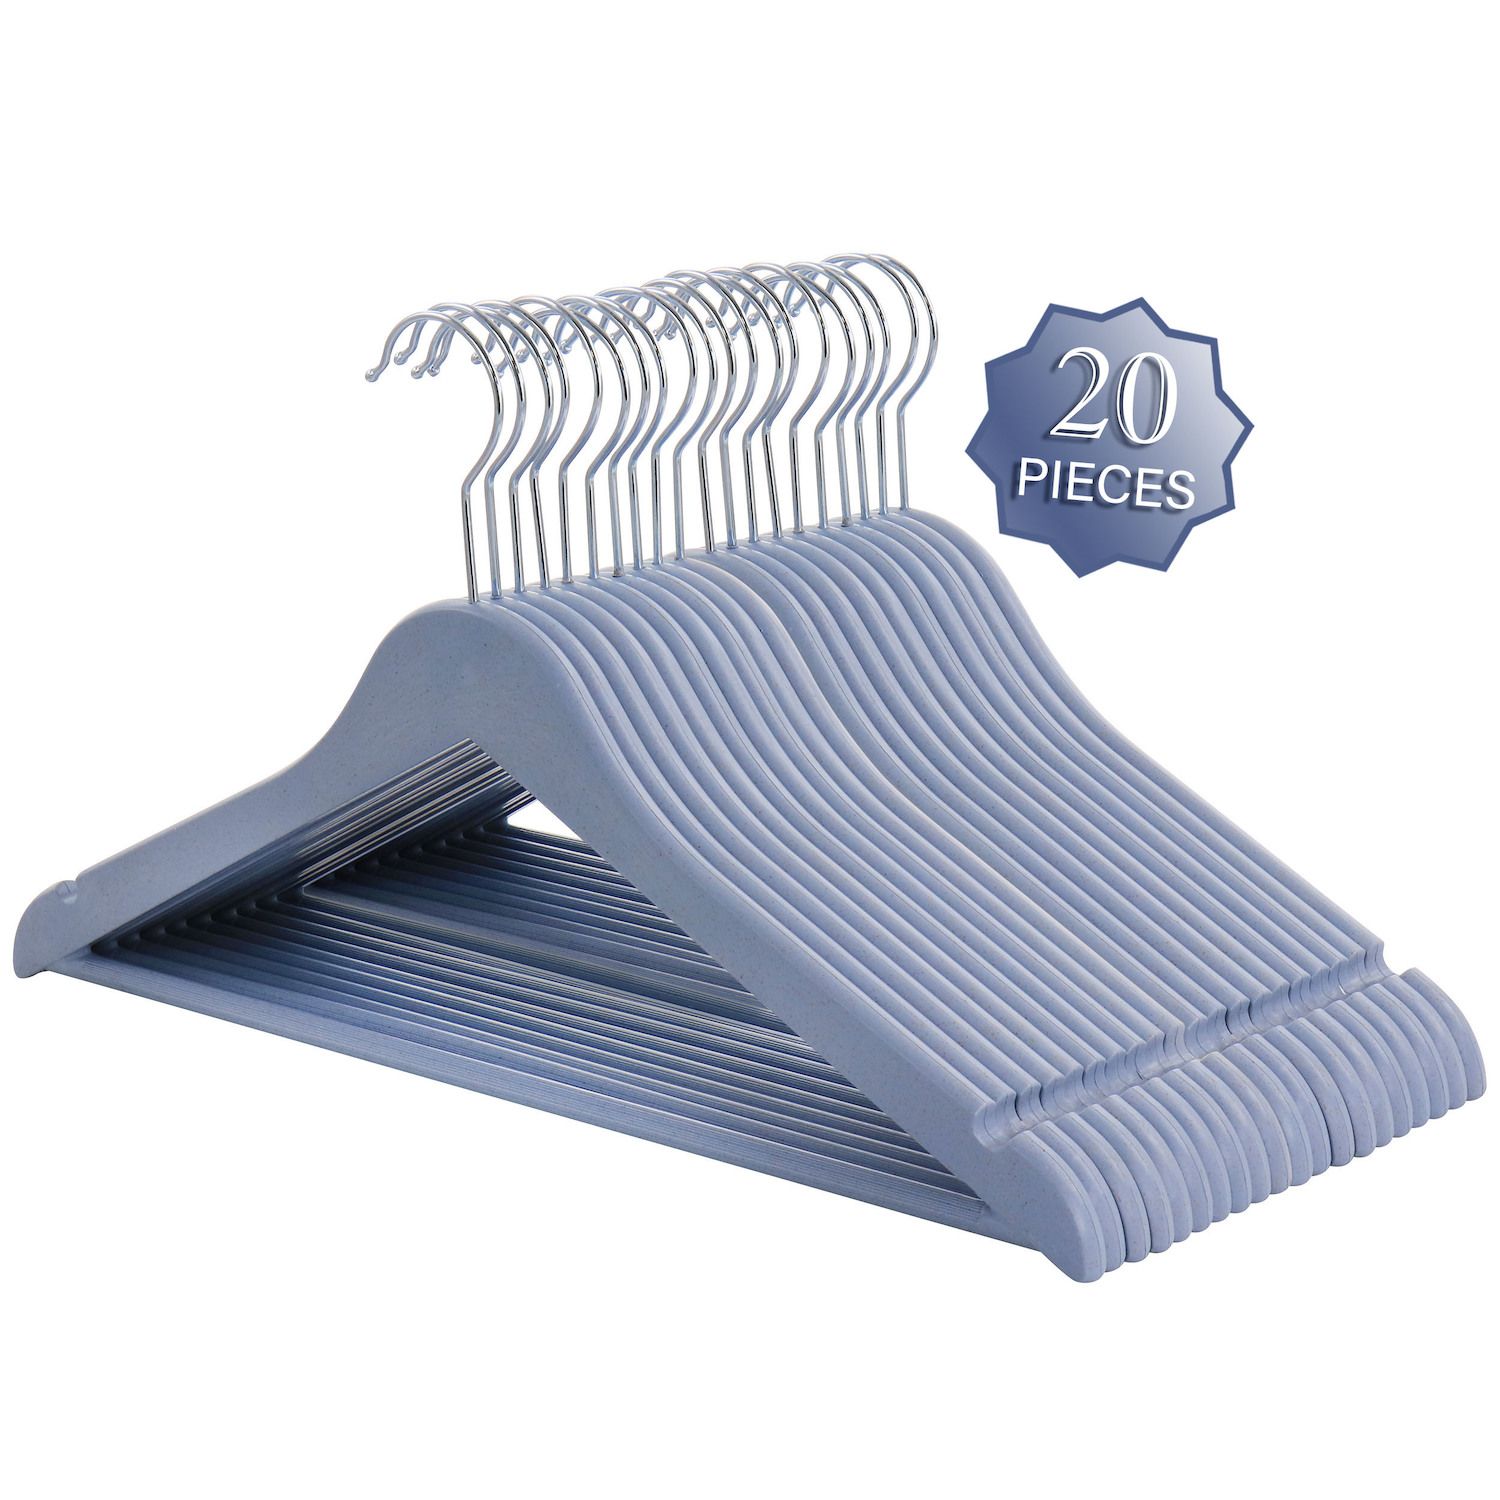 Home Basics 10-Pack Velvet Non-slip Grip Clothing Hanger (Sky Blue